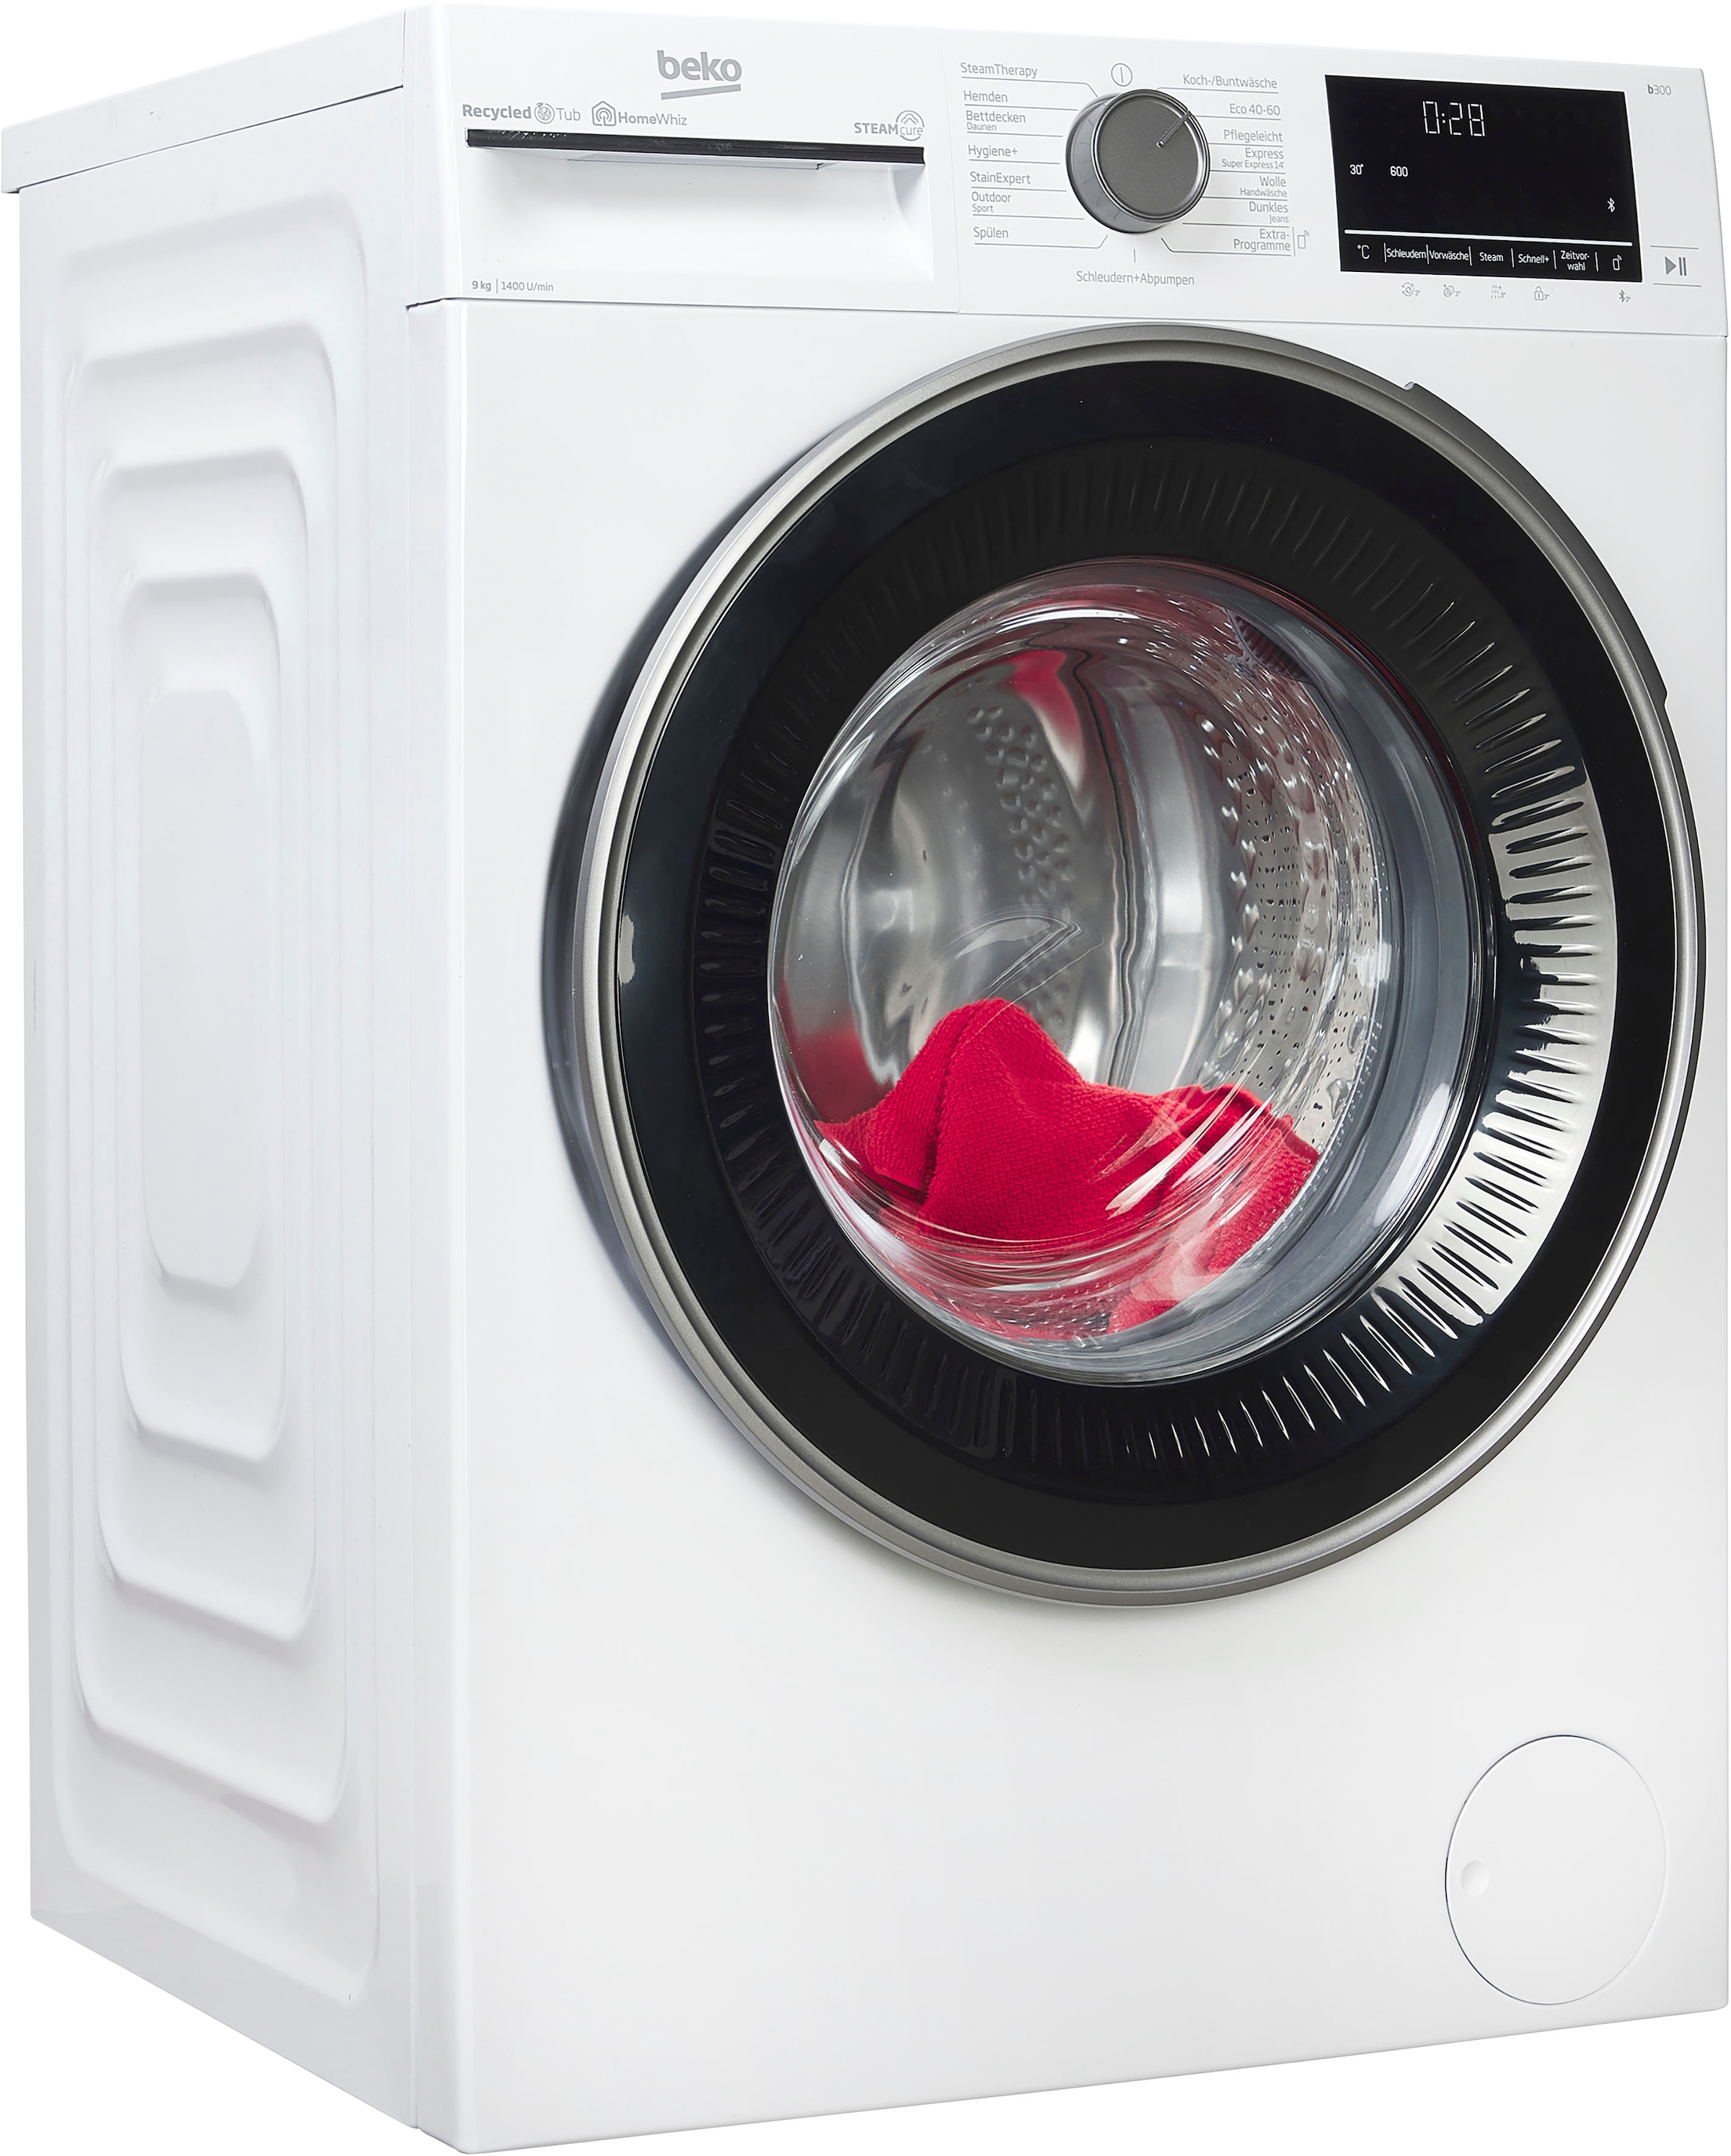 BEKO Waschmaschine, b300, B3WFU59415W2, 9 kg, 1400 U/min, SteamCure - 99% allergenfrei